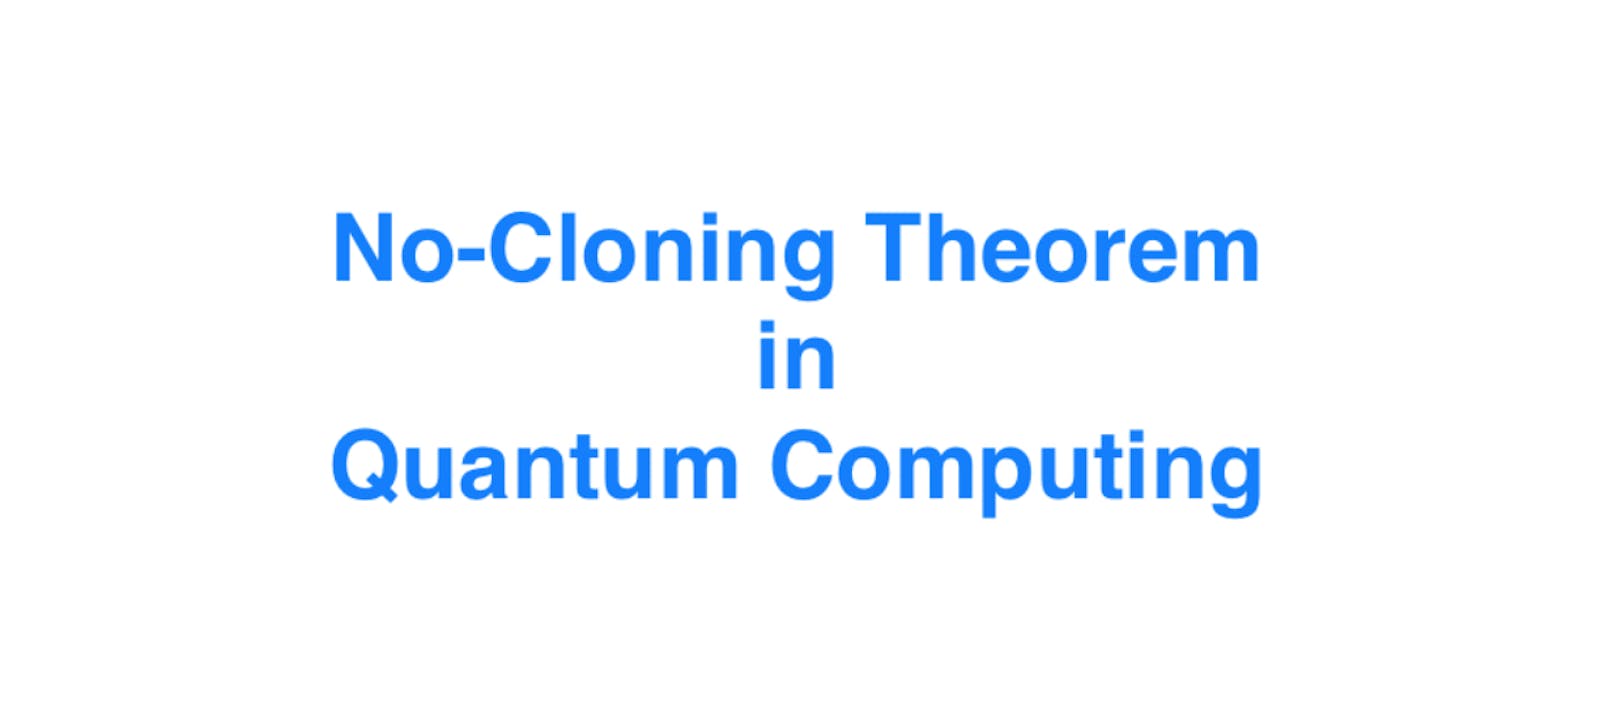 No-Cloning Theorem in Quantum Computing